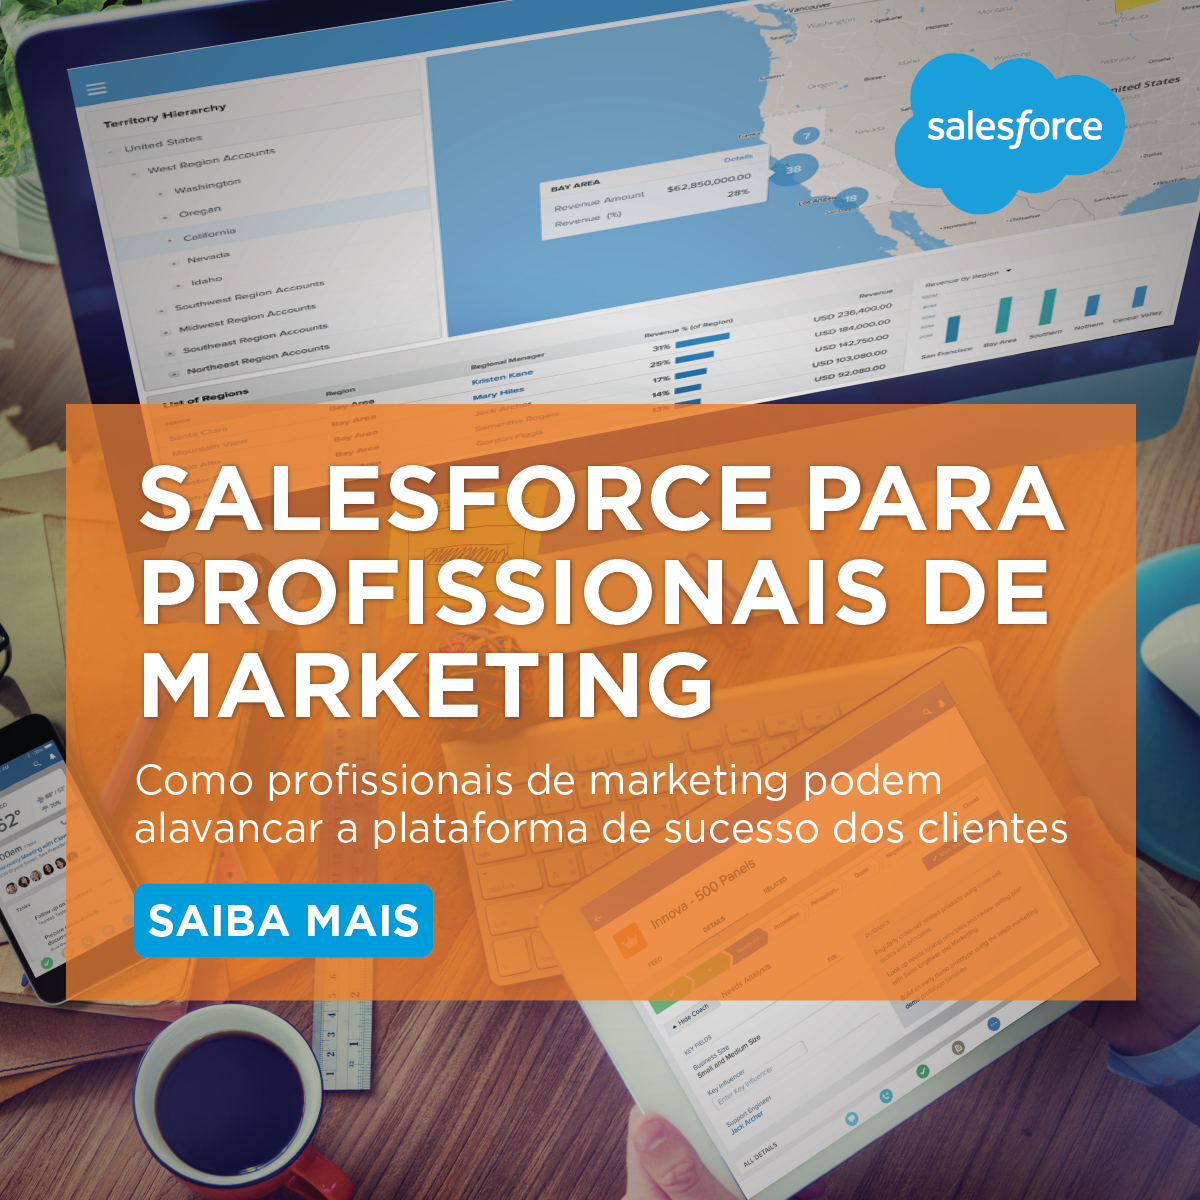 Salesforce of Marketer - Digitalks - 1200x1200-01